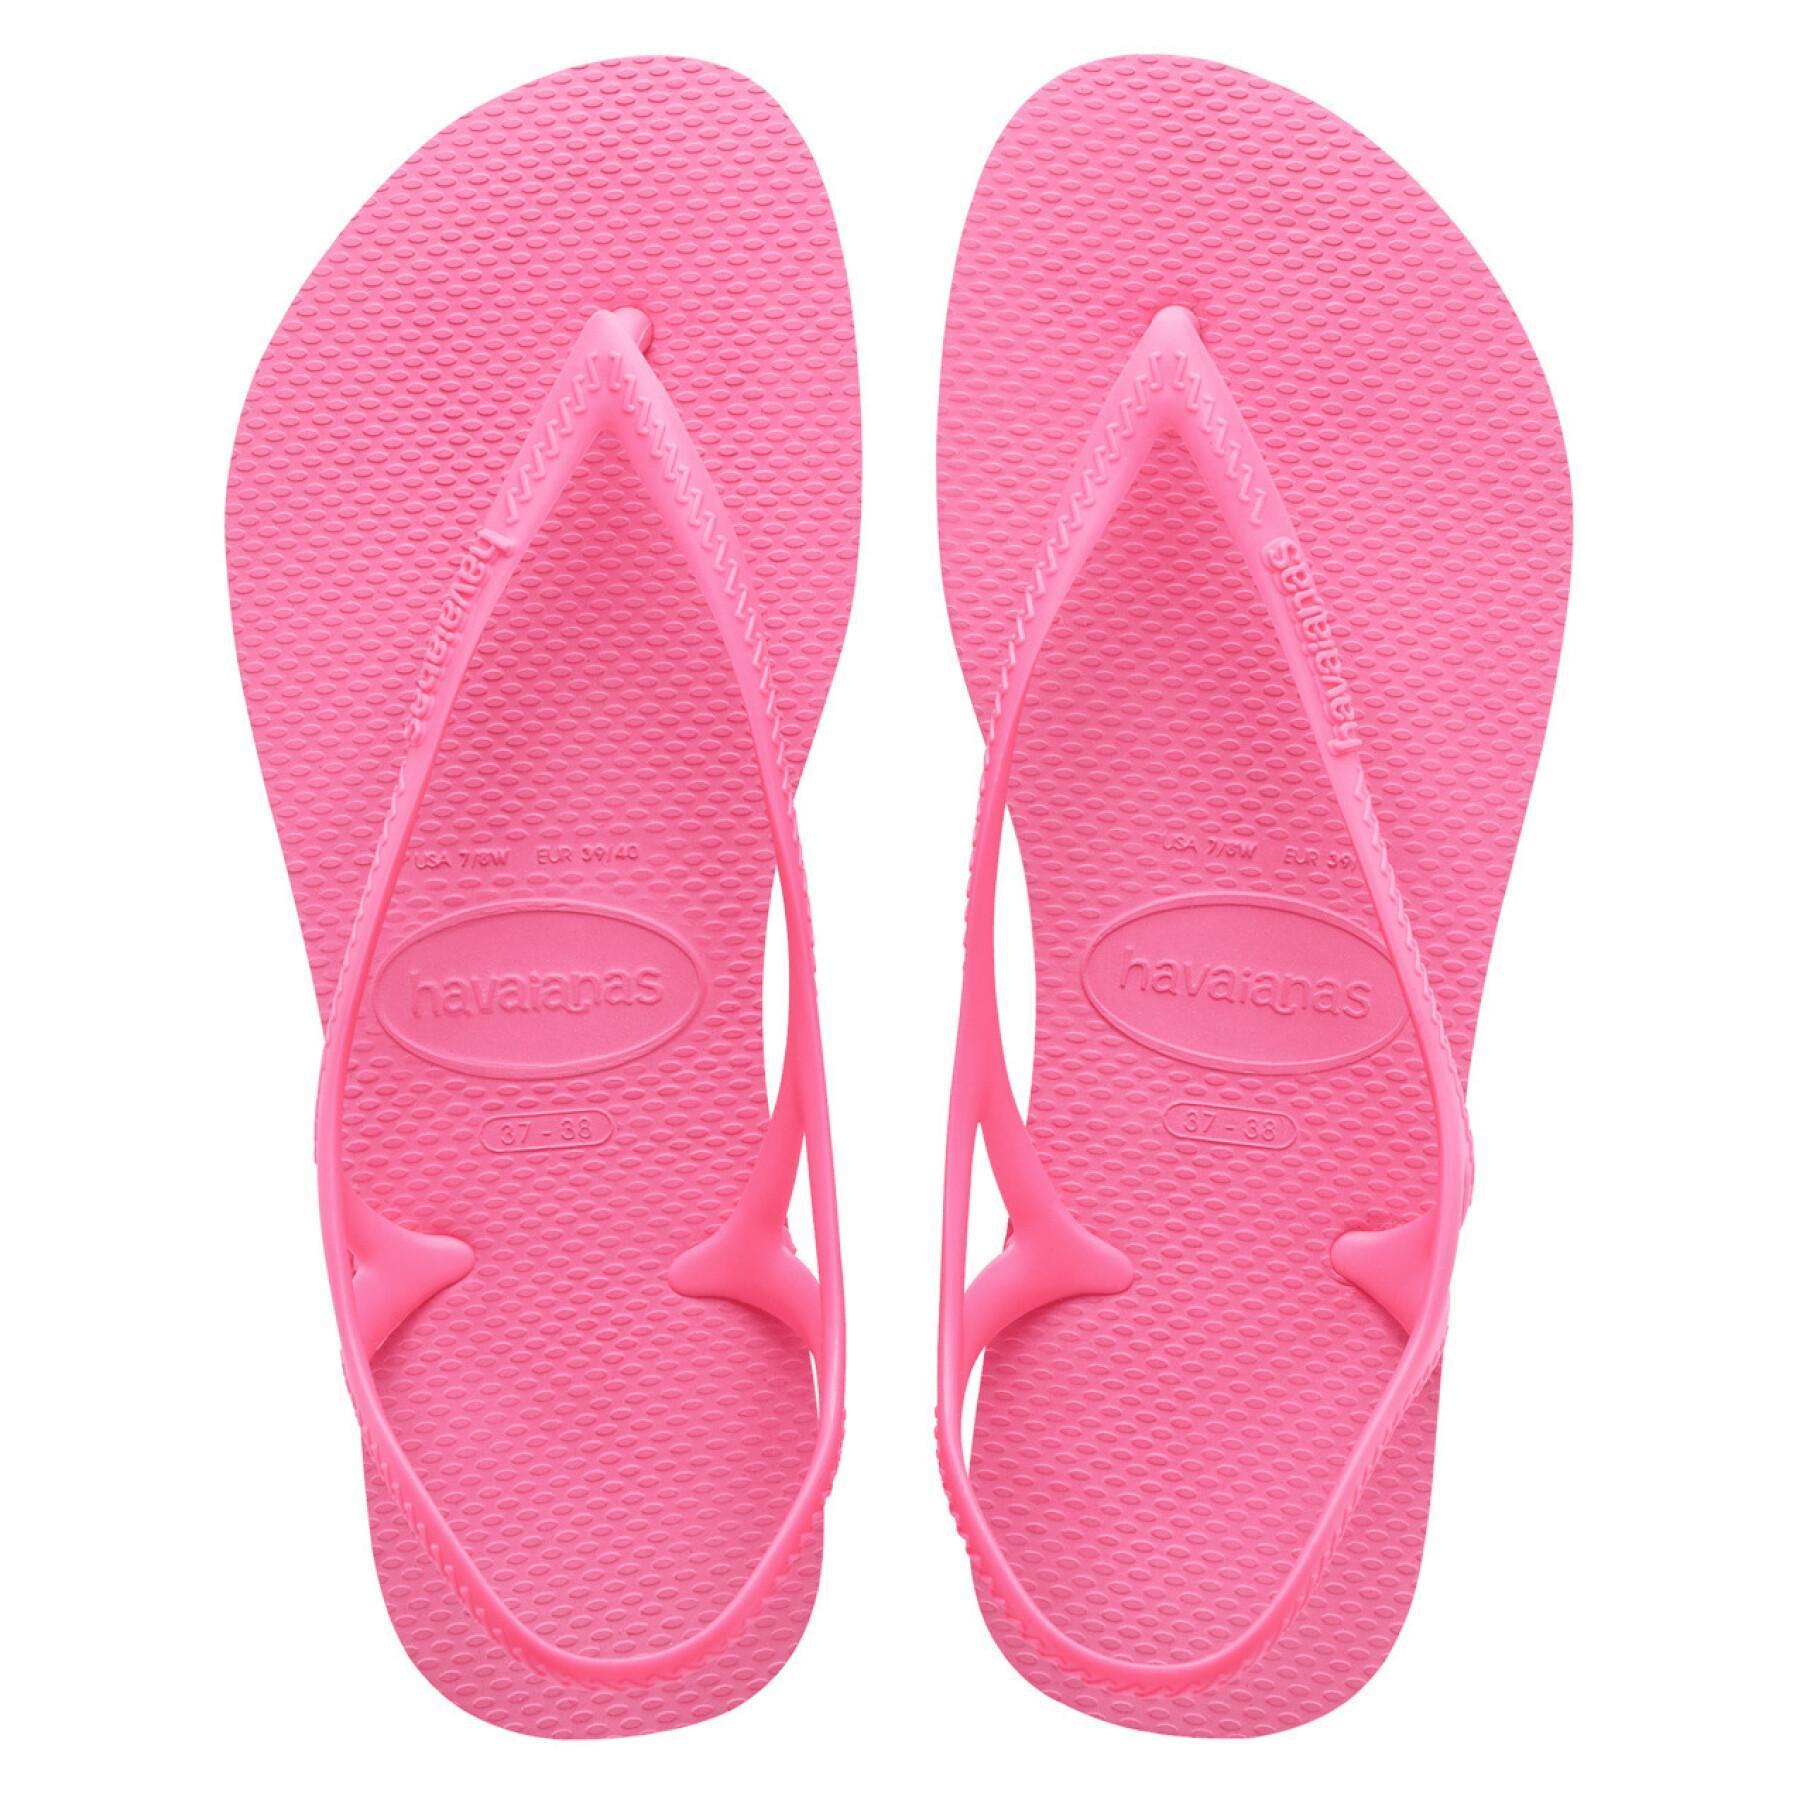 Women's sandals Havaianas Sunny II